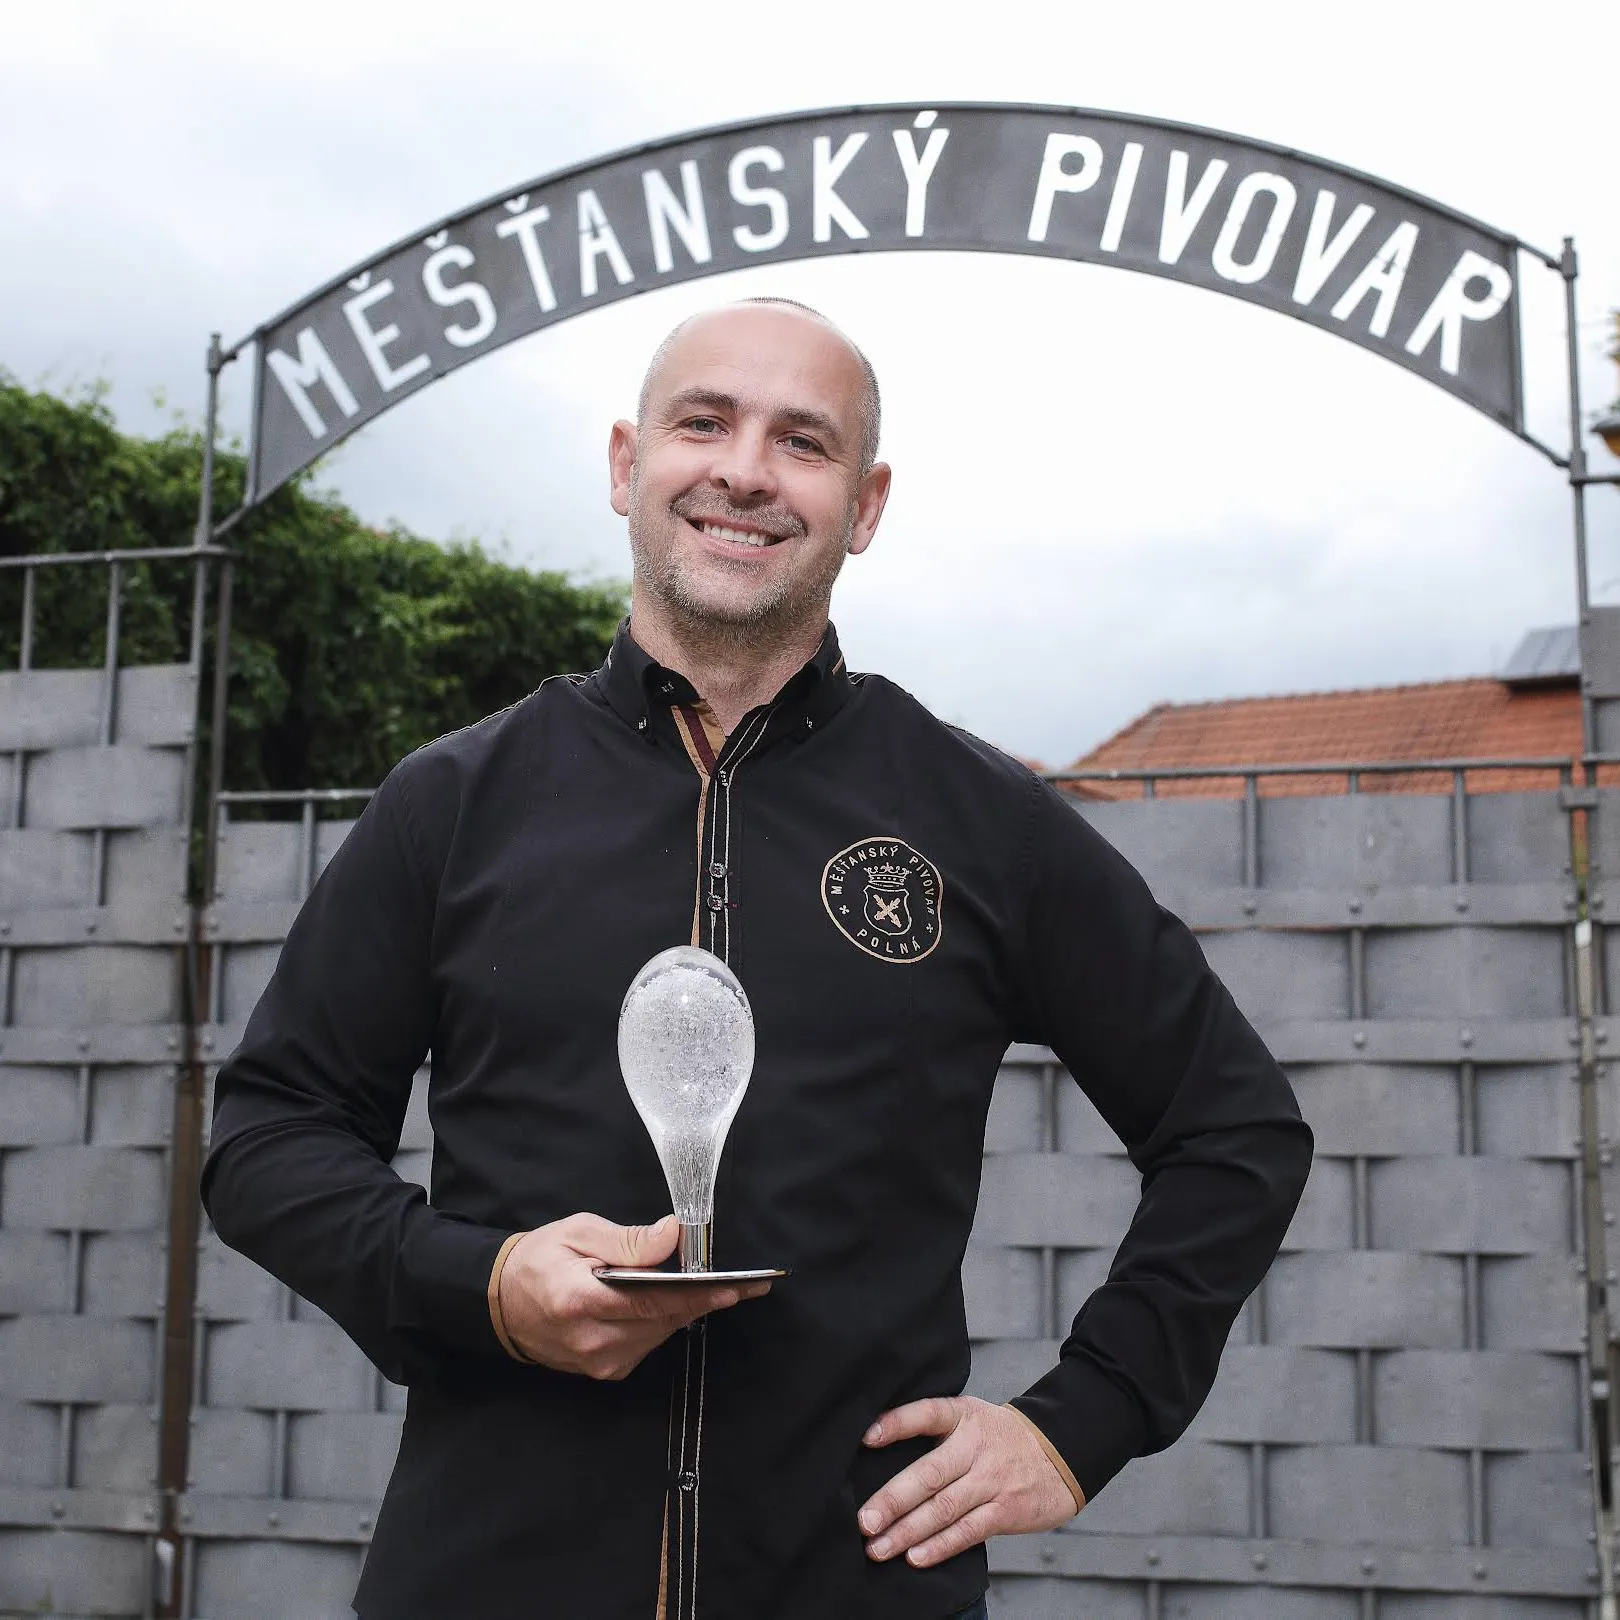 Ladislav Pártl, spolumajitel Měšťanského pivovaru Polná, stojí před bránou s nápisem Měšťasnký pivovar a drží ocenění Křišťálový špendlík.